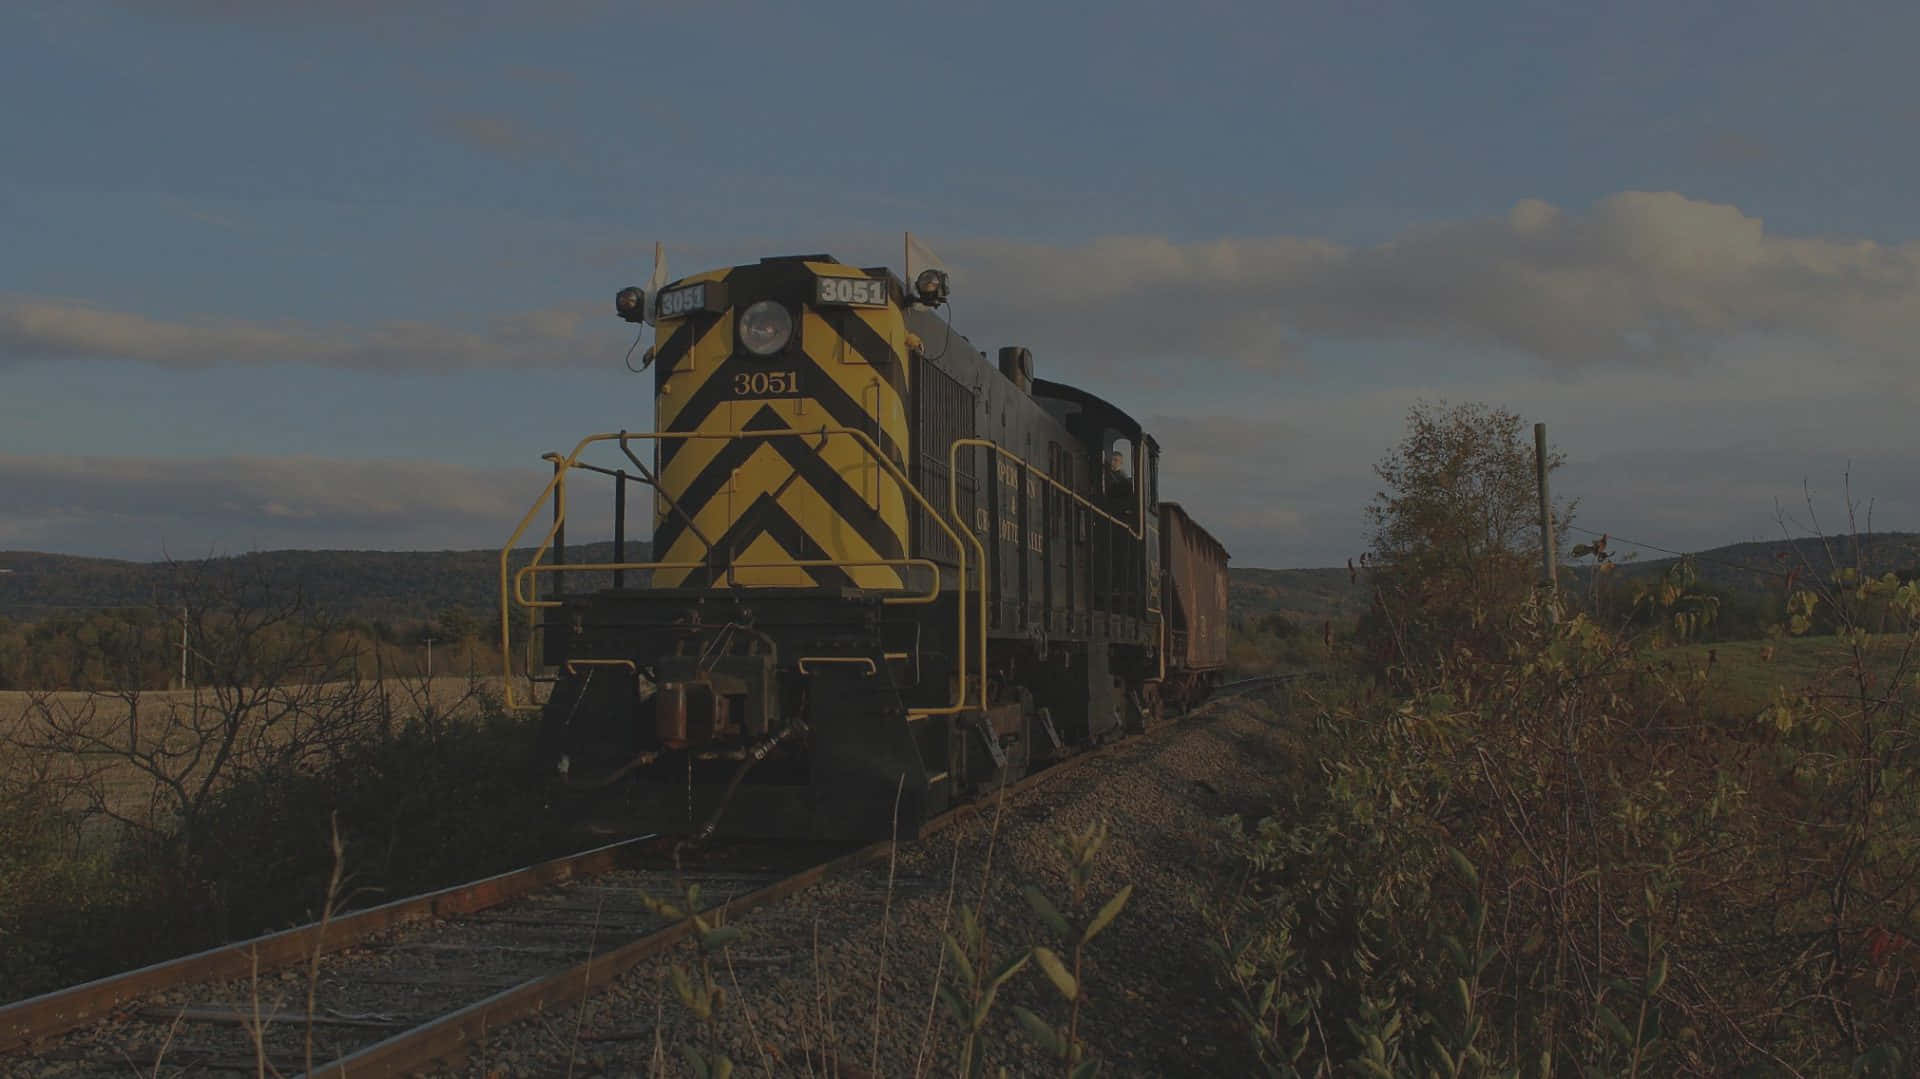 Imagendel Ferrocarril Cooperstown